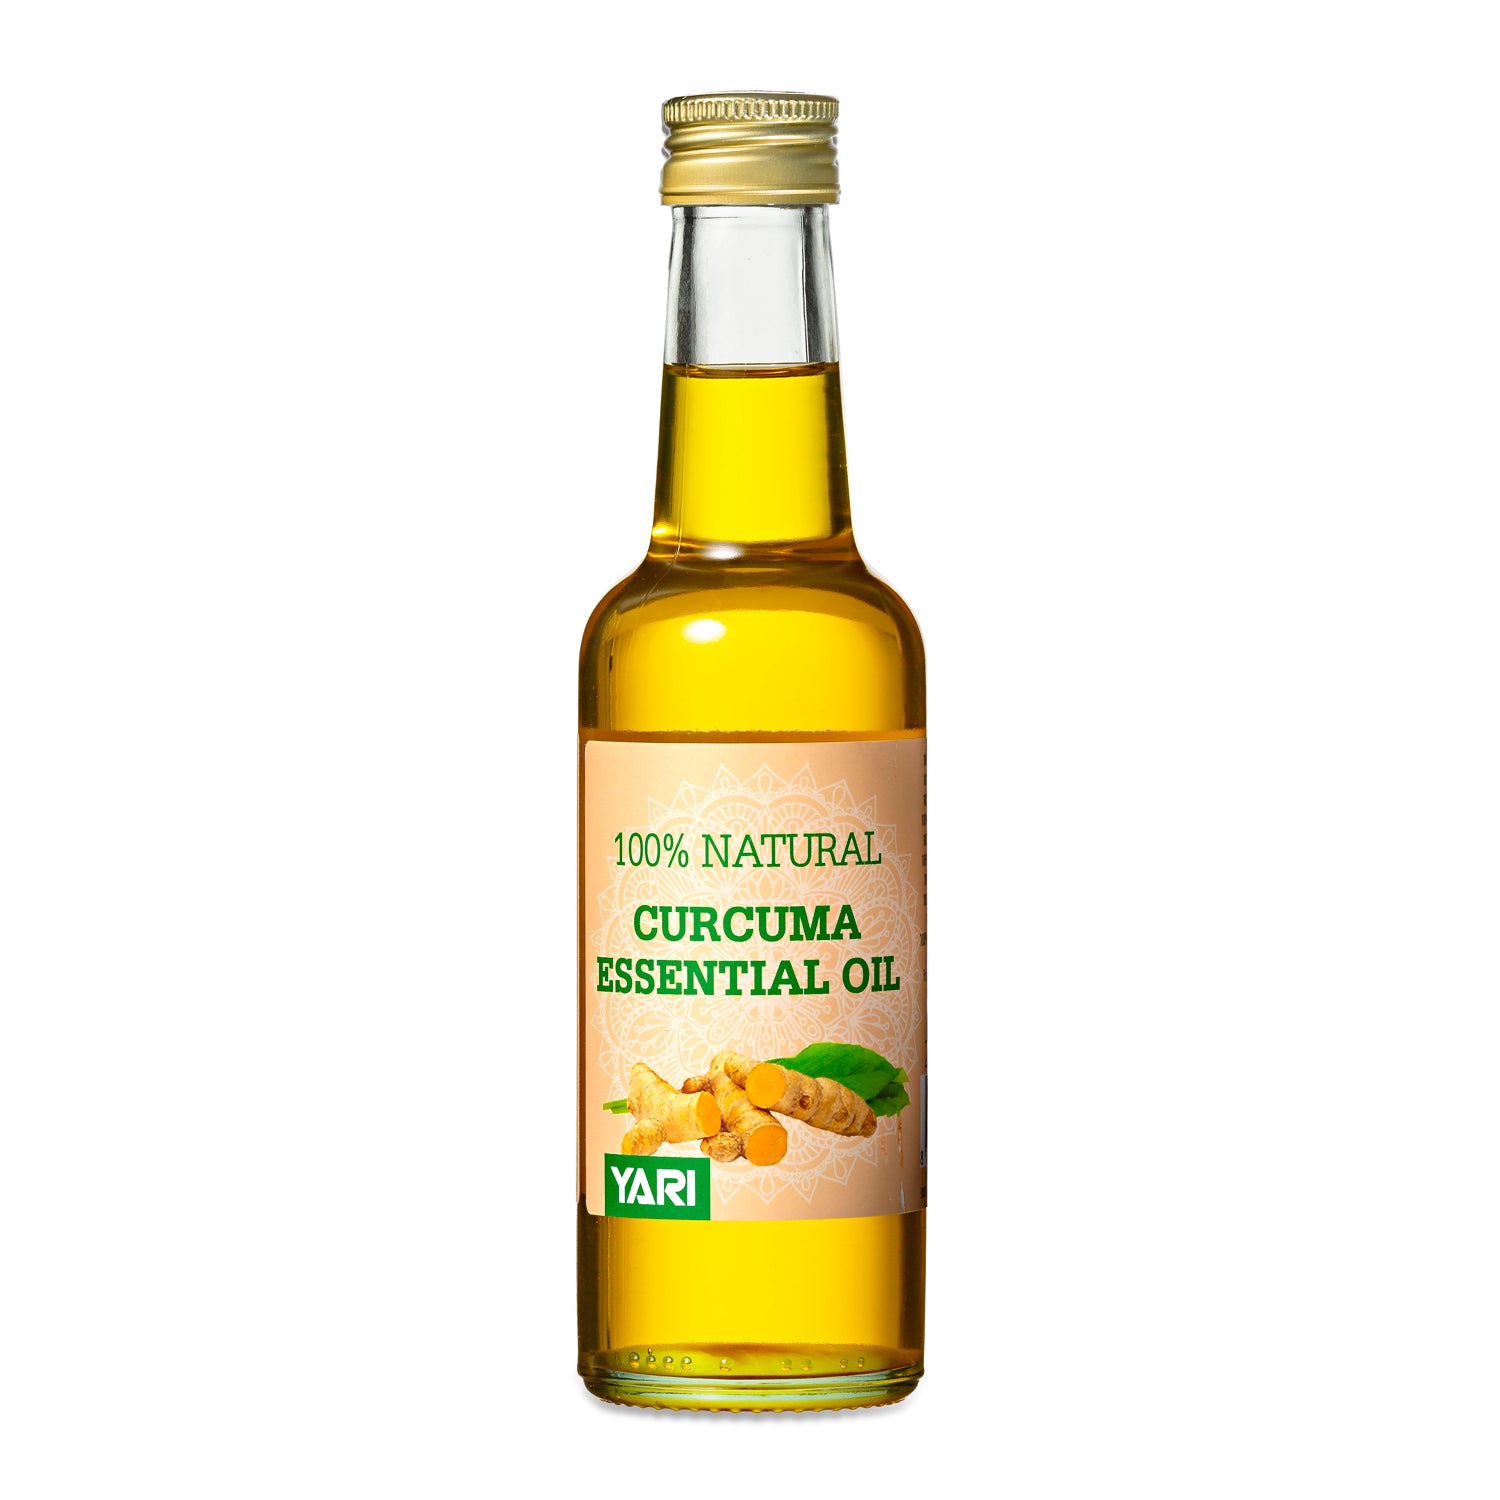 Yari - 100% Natural Curcuma Essential Oil 250ml